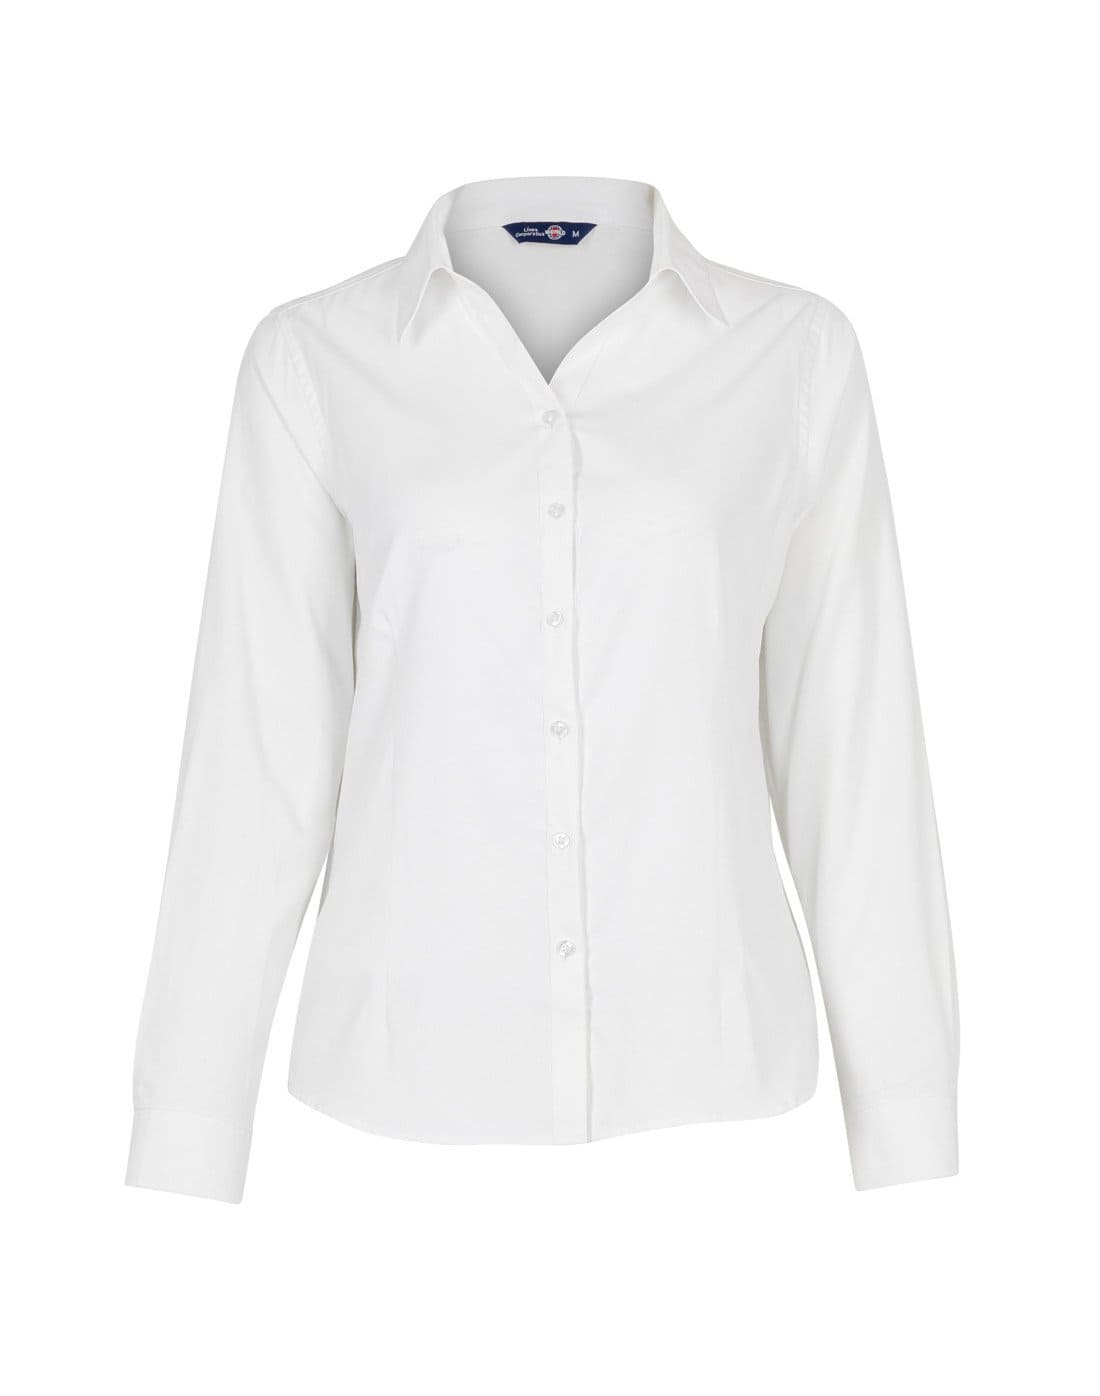 Blusa Oxford Light de TEAMGRAFF, elegancia y ligereza para el día a día, ideal para profesionales y ocasiones casuales